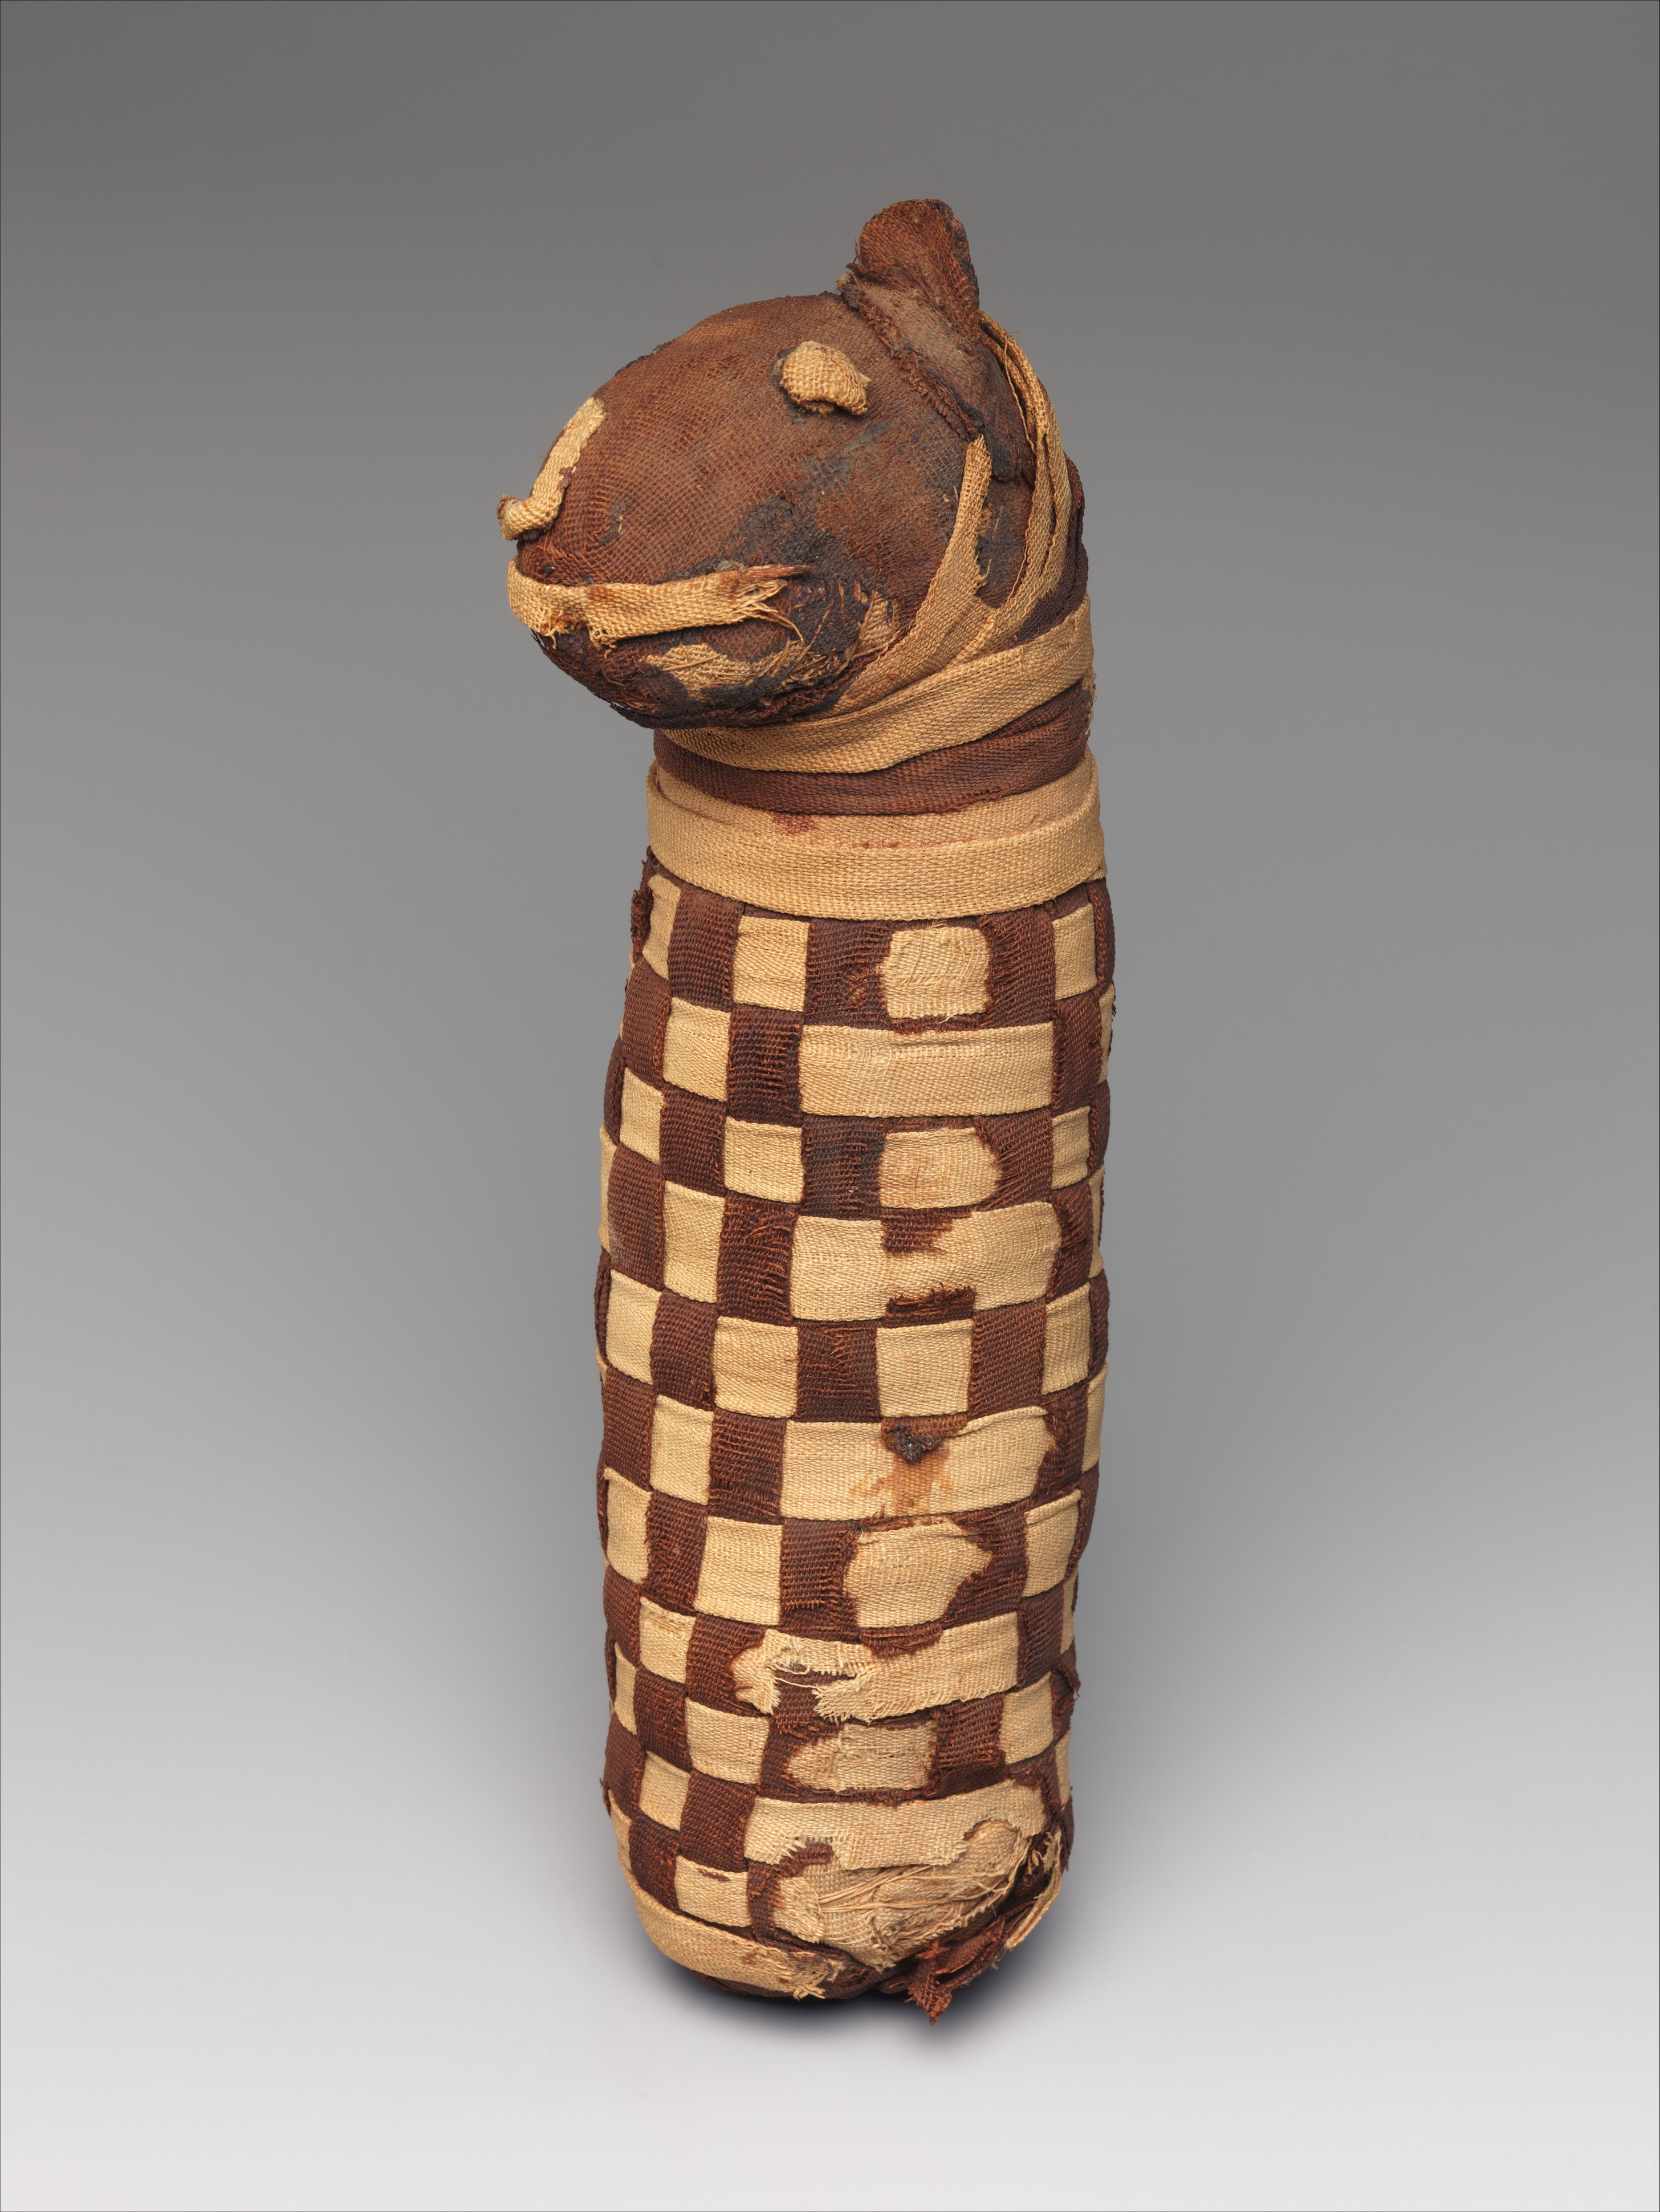 مومياء حيوان مقدس تحوي عظام كلب by غير معروف فنان - حوالي 400 قبل الميلاد إلى 100 بعد الميلاد - 28 في 6.5 في 10 سم 